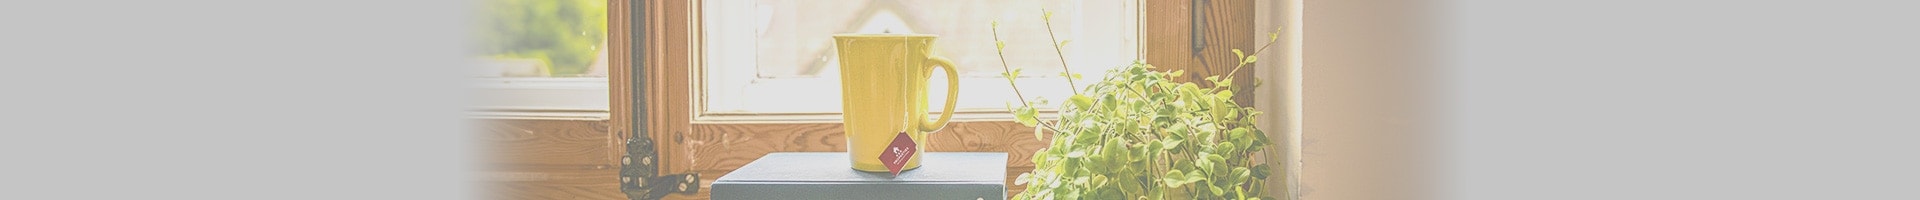 Image of window and mug with R&R logo